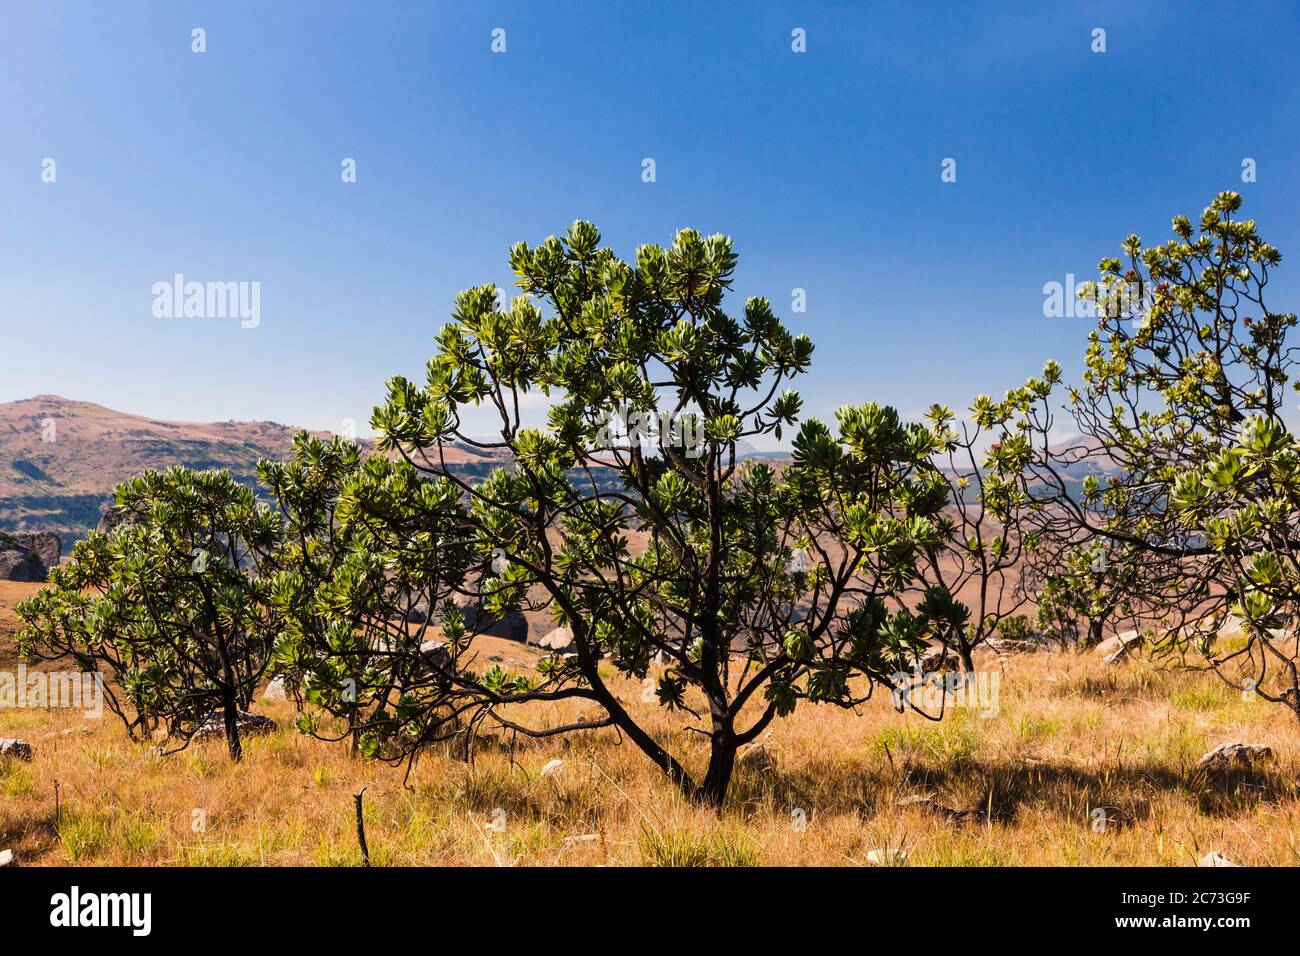 Protea Trees, Drakensberg, près du col Sani, région sauvage de Mkhomazi, KwaZulu-Natal, Afrique du Sud, Afrique Banque D'Images